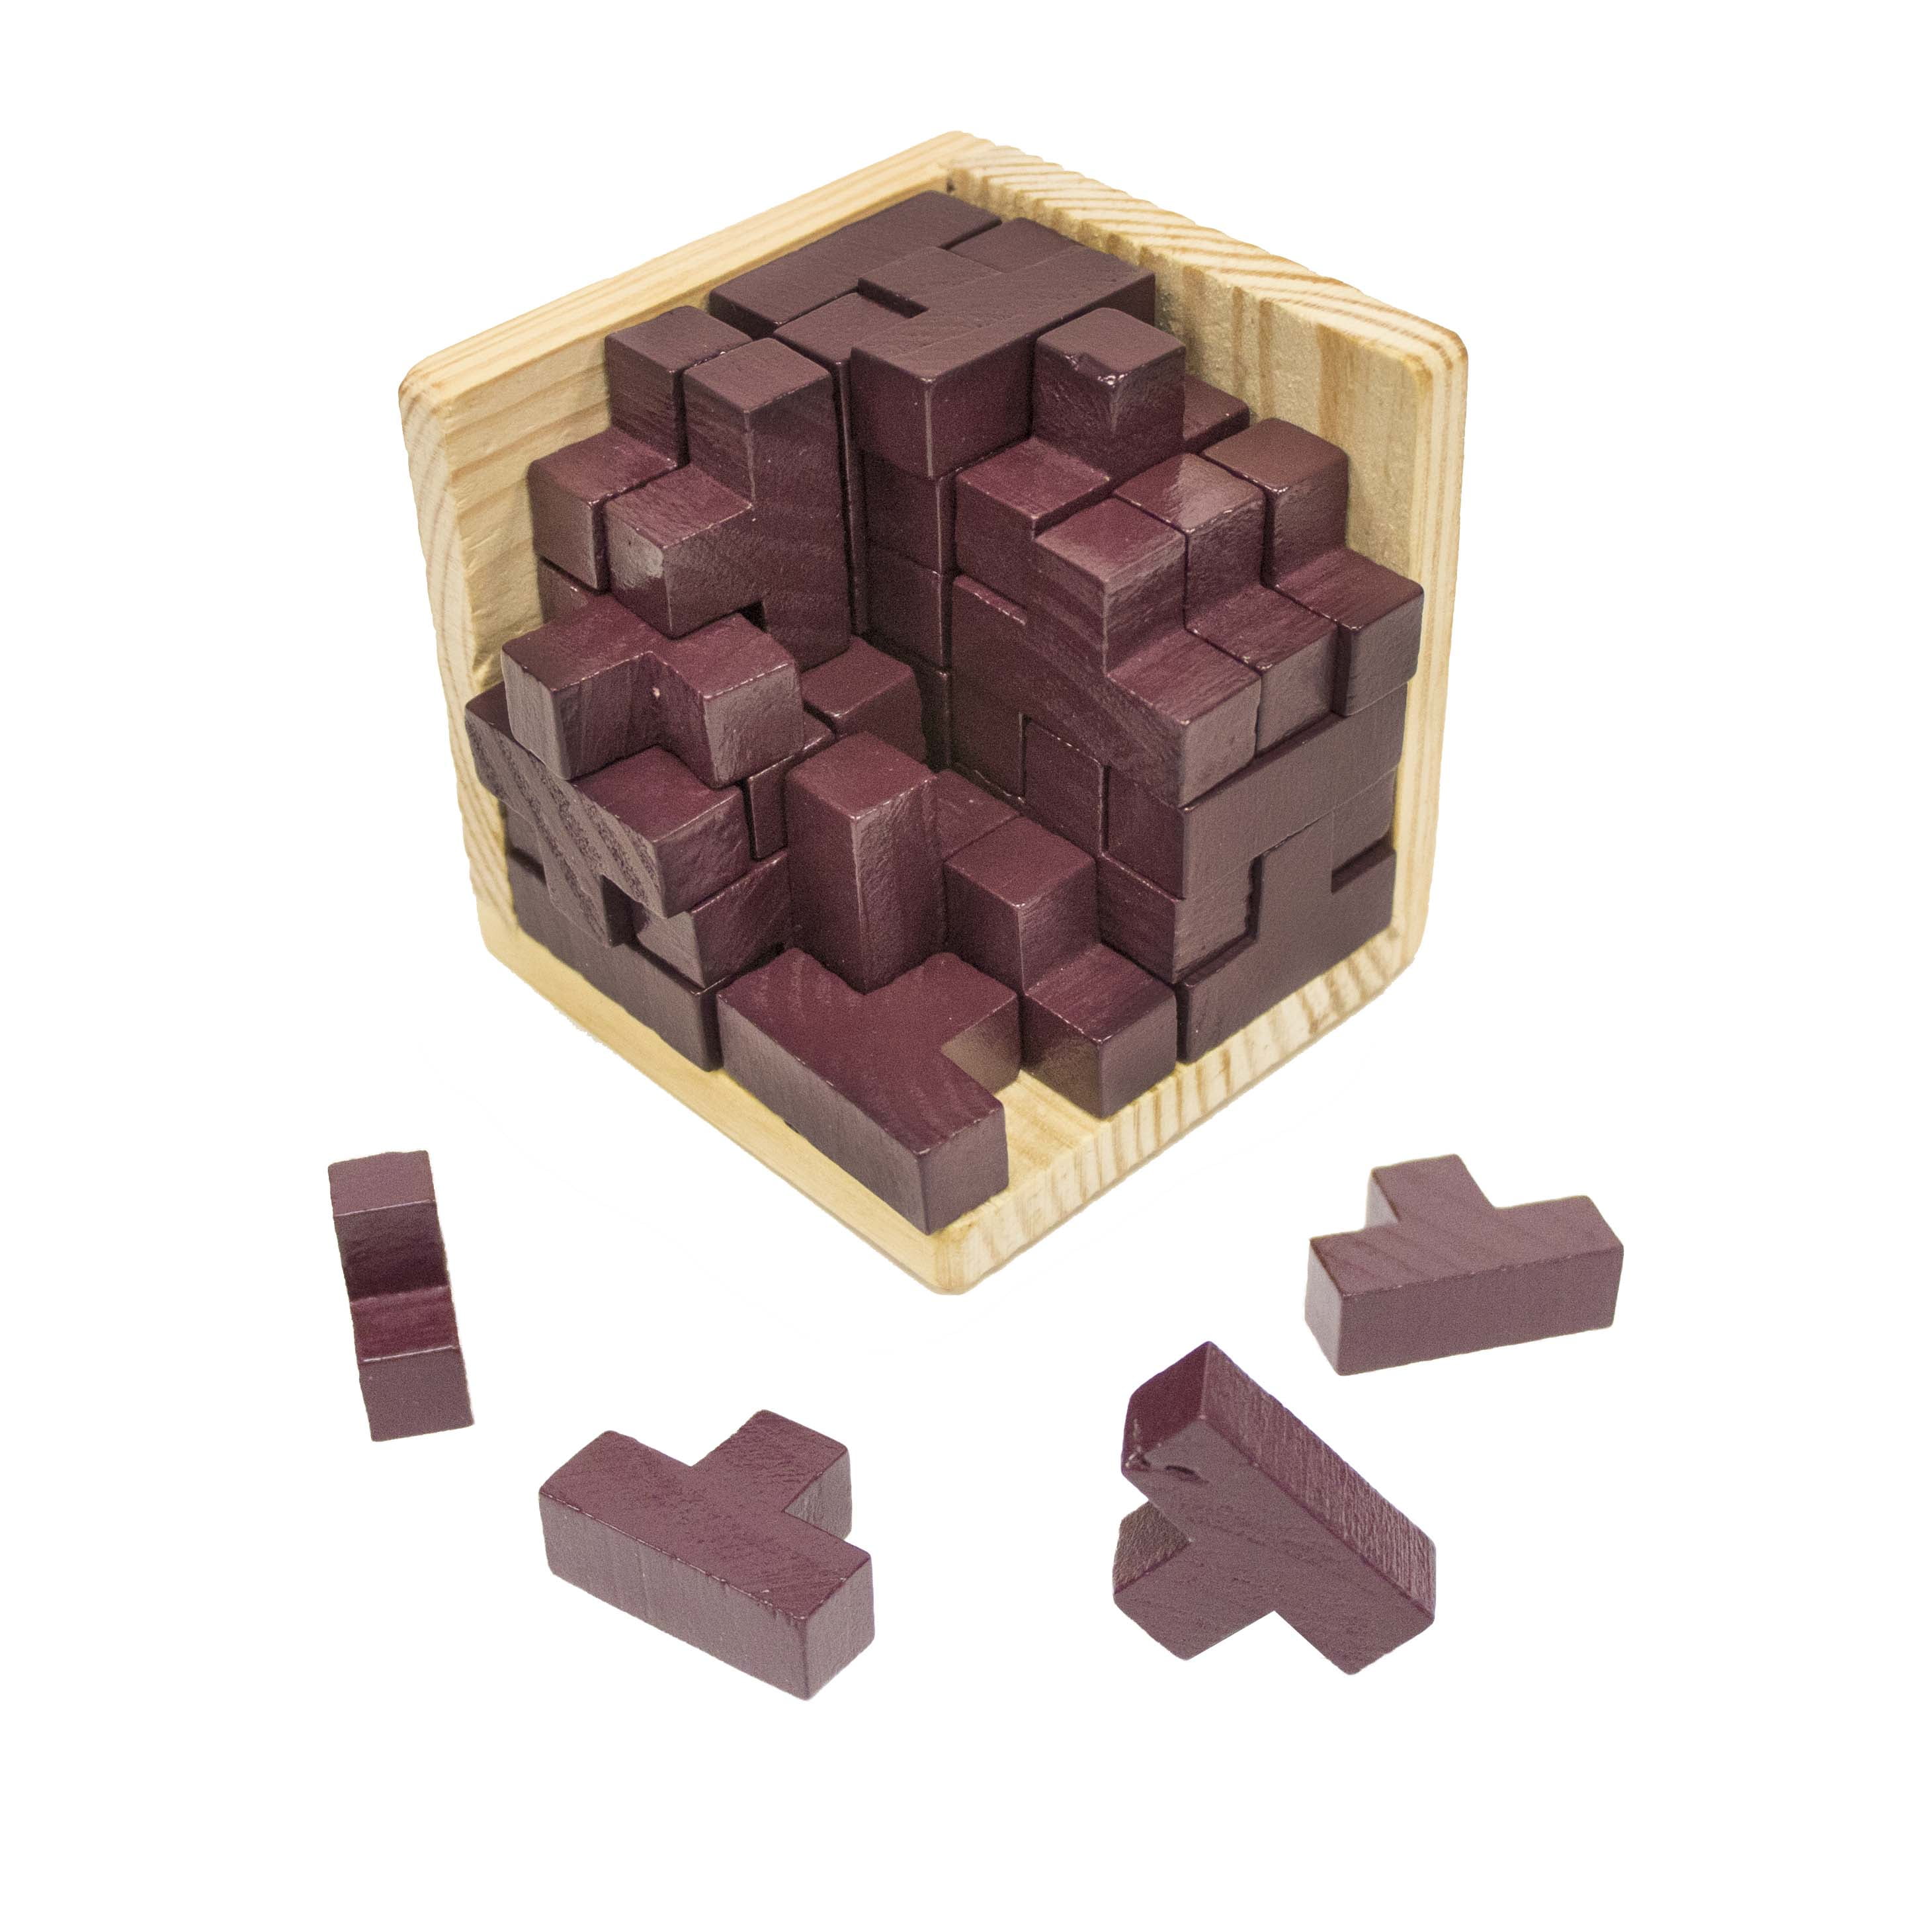 Tetris Magic Cube Multi-color 3D Wooden Puzzle Educational Brain Teaser Games 